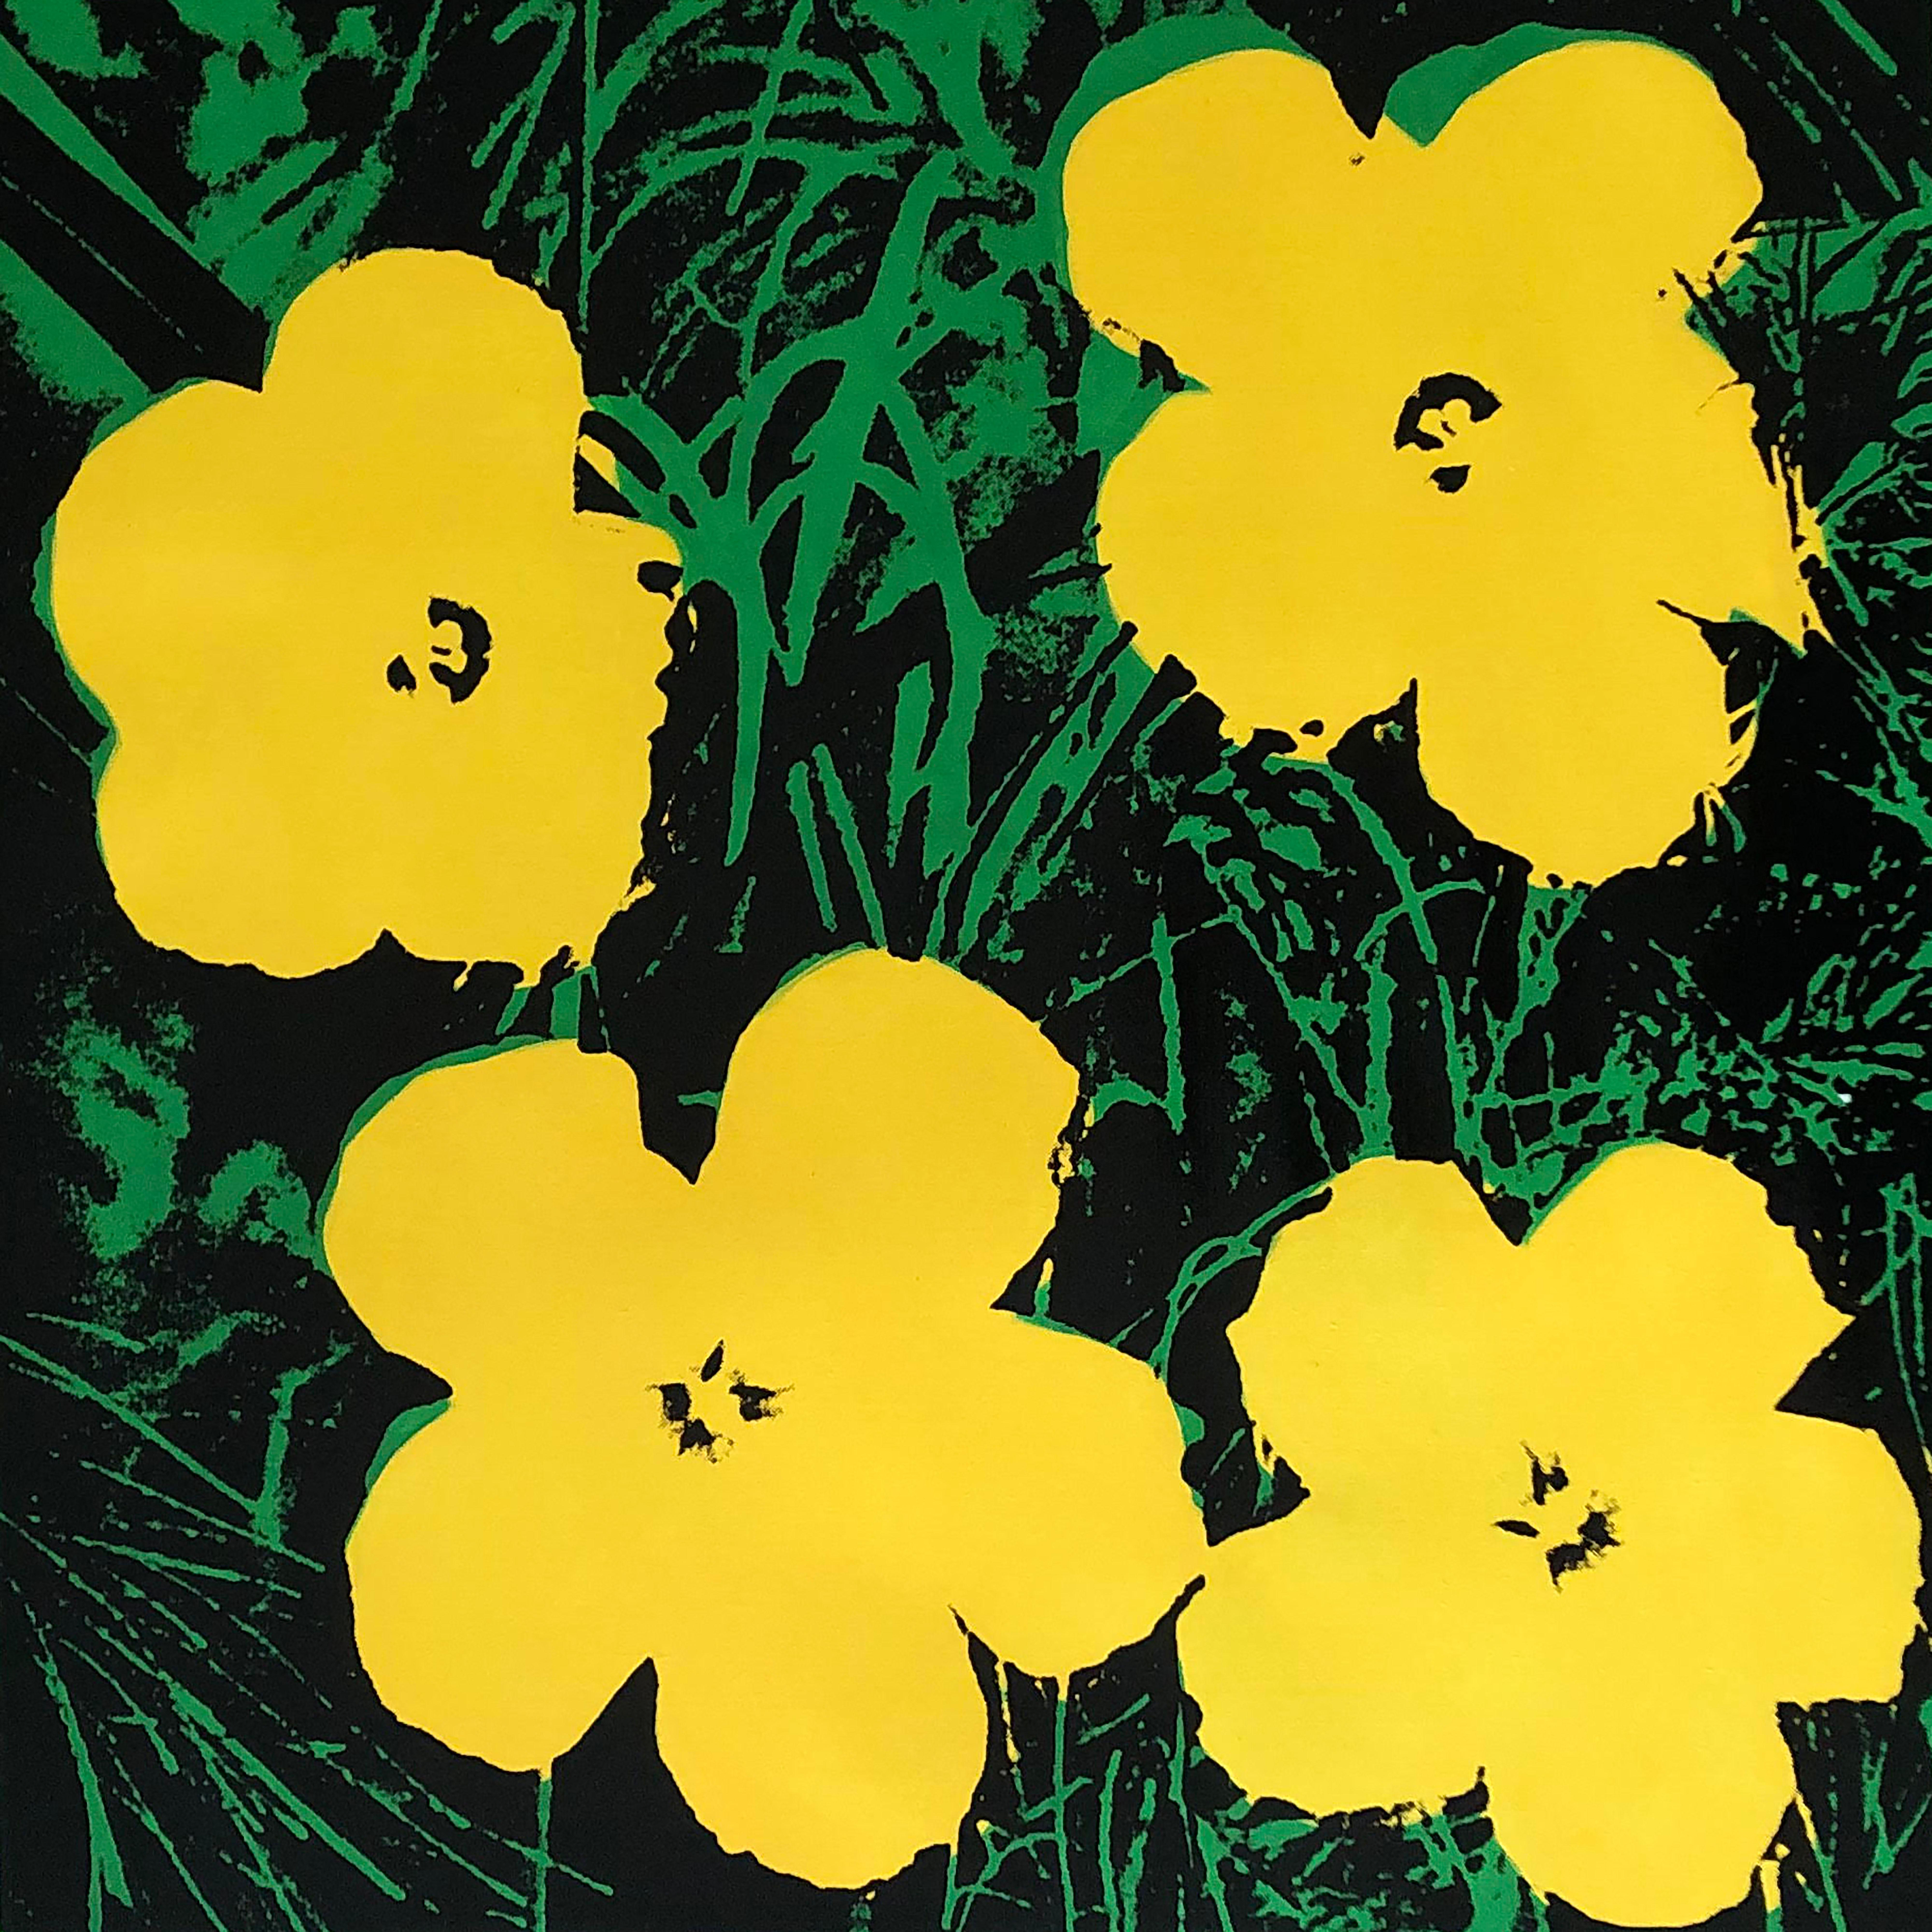 Verweigerte Warhol-Blumen, (Gelb) Siebdruck Leinengemälde von Charles Lutz
Siebdruck und Acryl auf Leinen mit Verweigerungsstempel des Andy Warhol Art Authentication Board. 
24 x 24" Zoll 
2008

Lutz' Serie "Warhol Denied" aus dem Jahr 2007 erregte